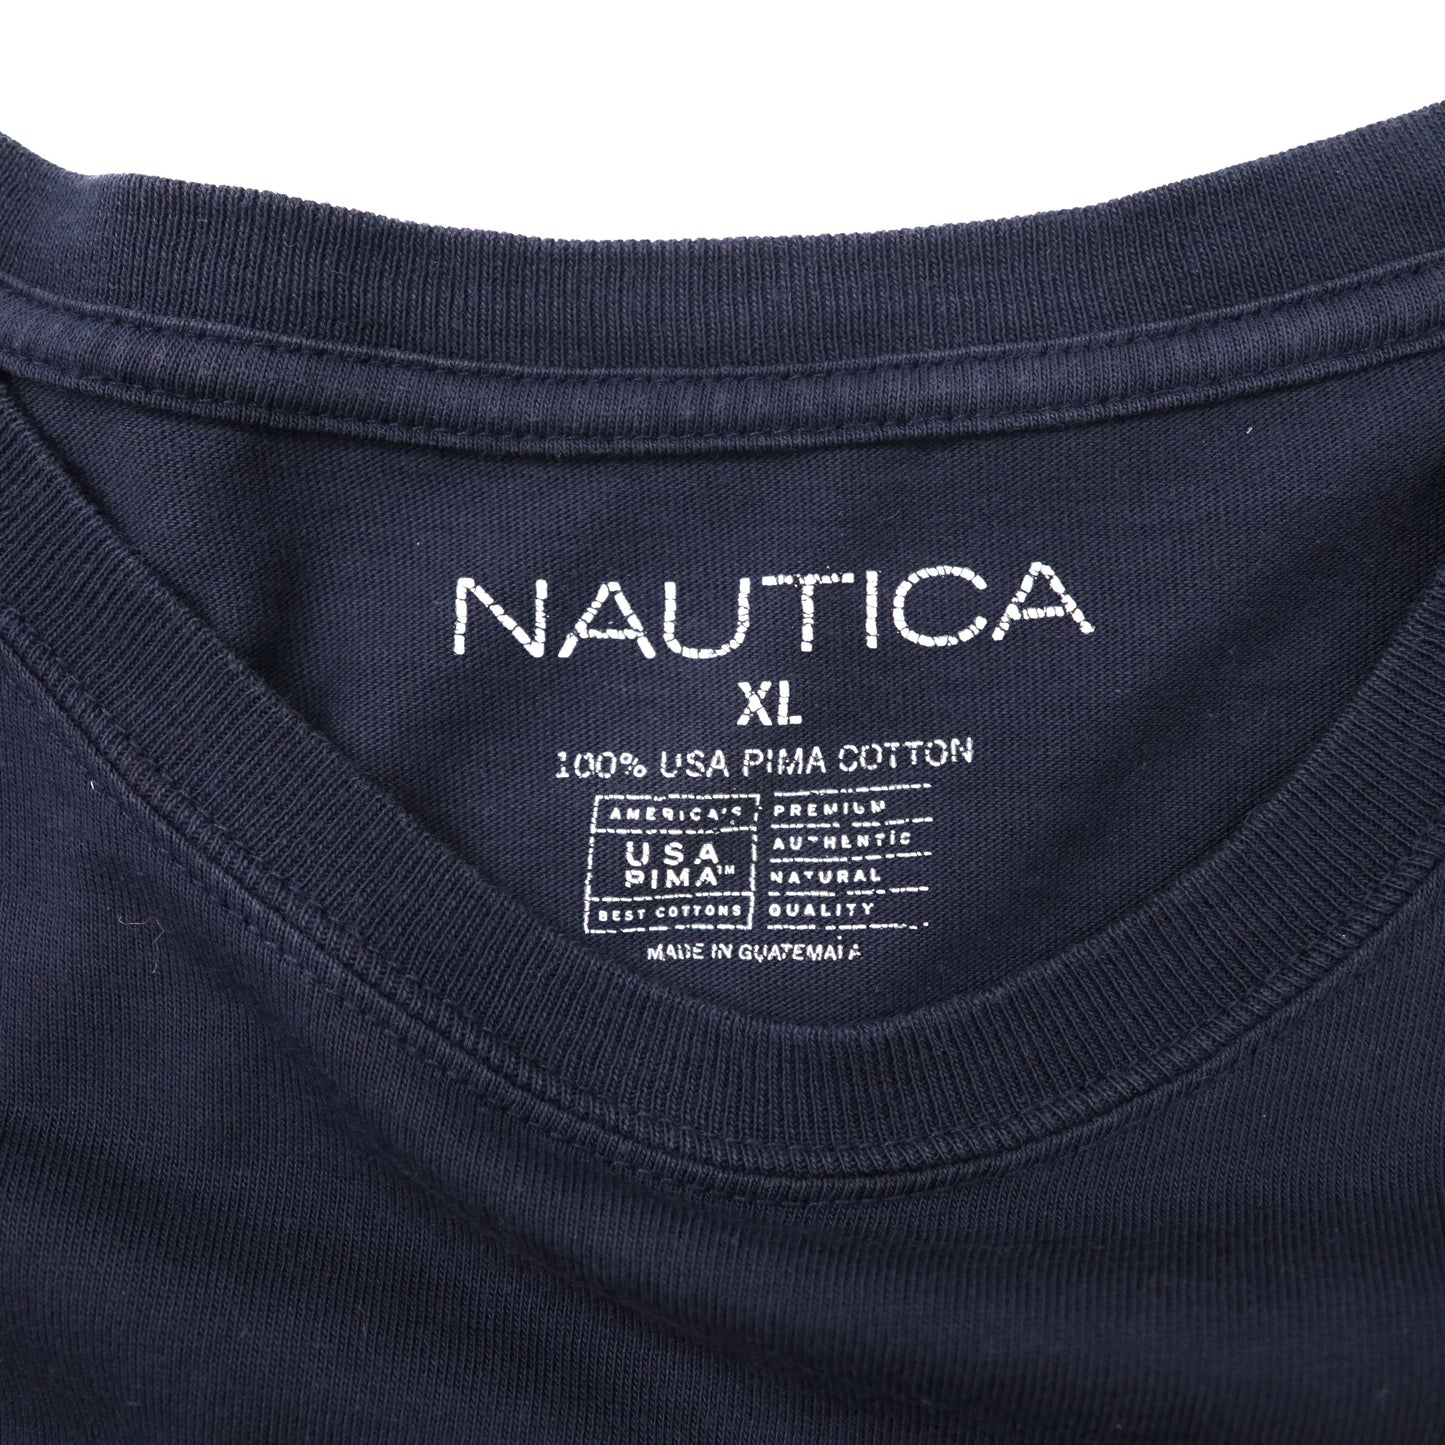 NAUTICA ビッグサイズ ワンポイントロゴTシャツ XL ネイビー USAピマコットン